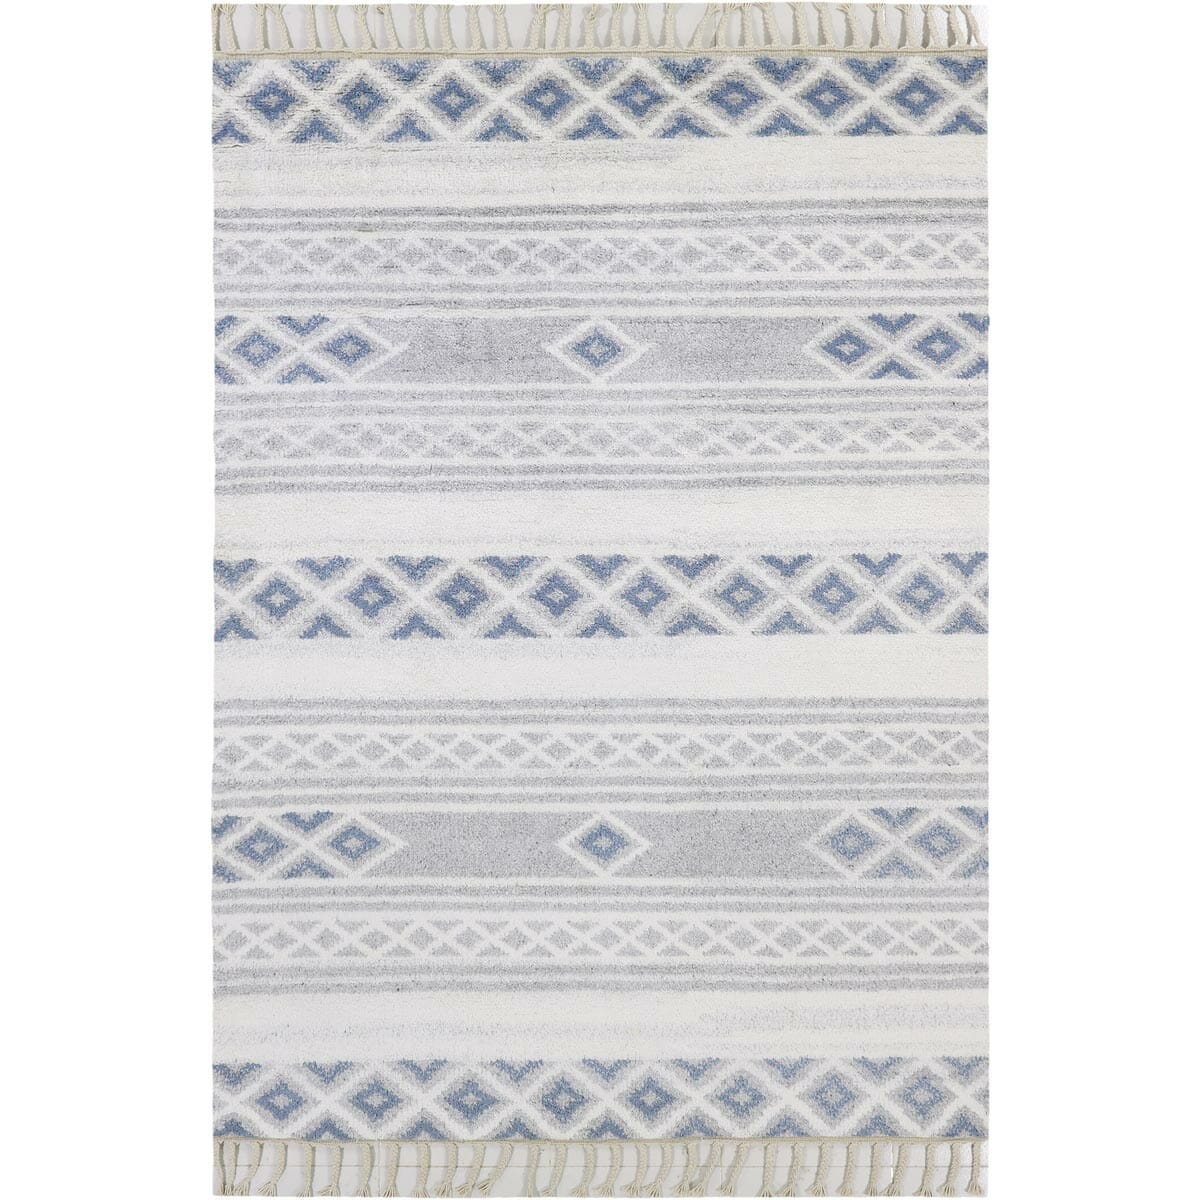 שטיח ברבר מרוקאי 04 כחול/אפור עם פרנזים | השטיח האדום